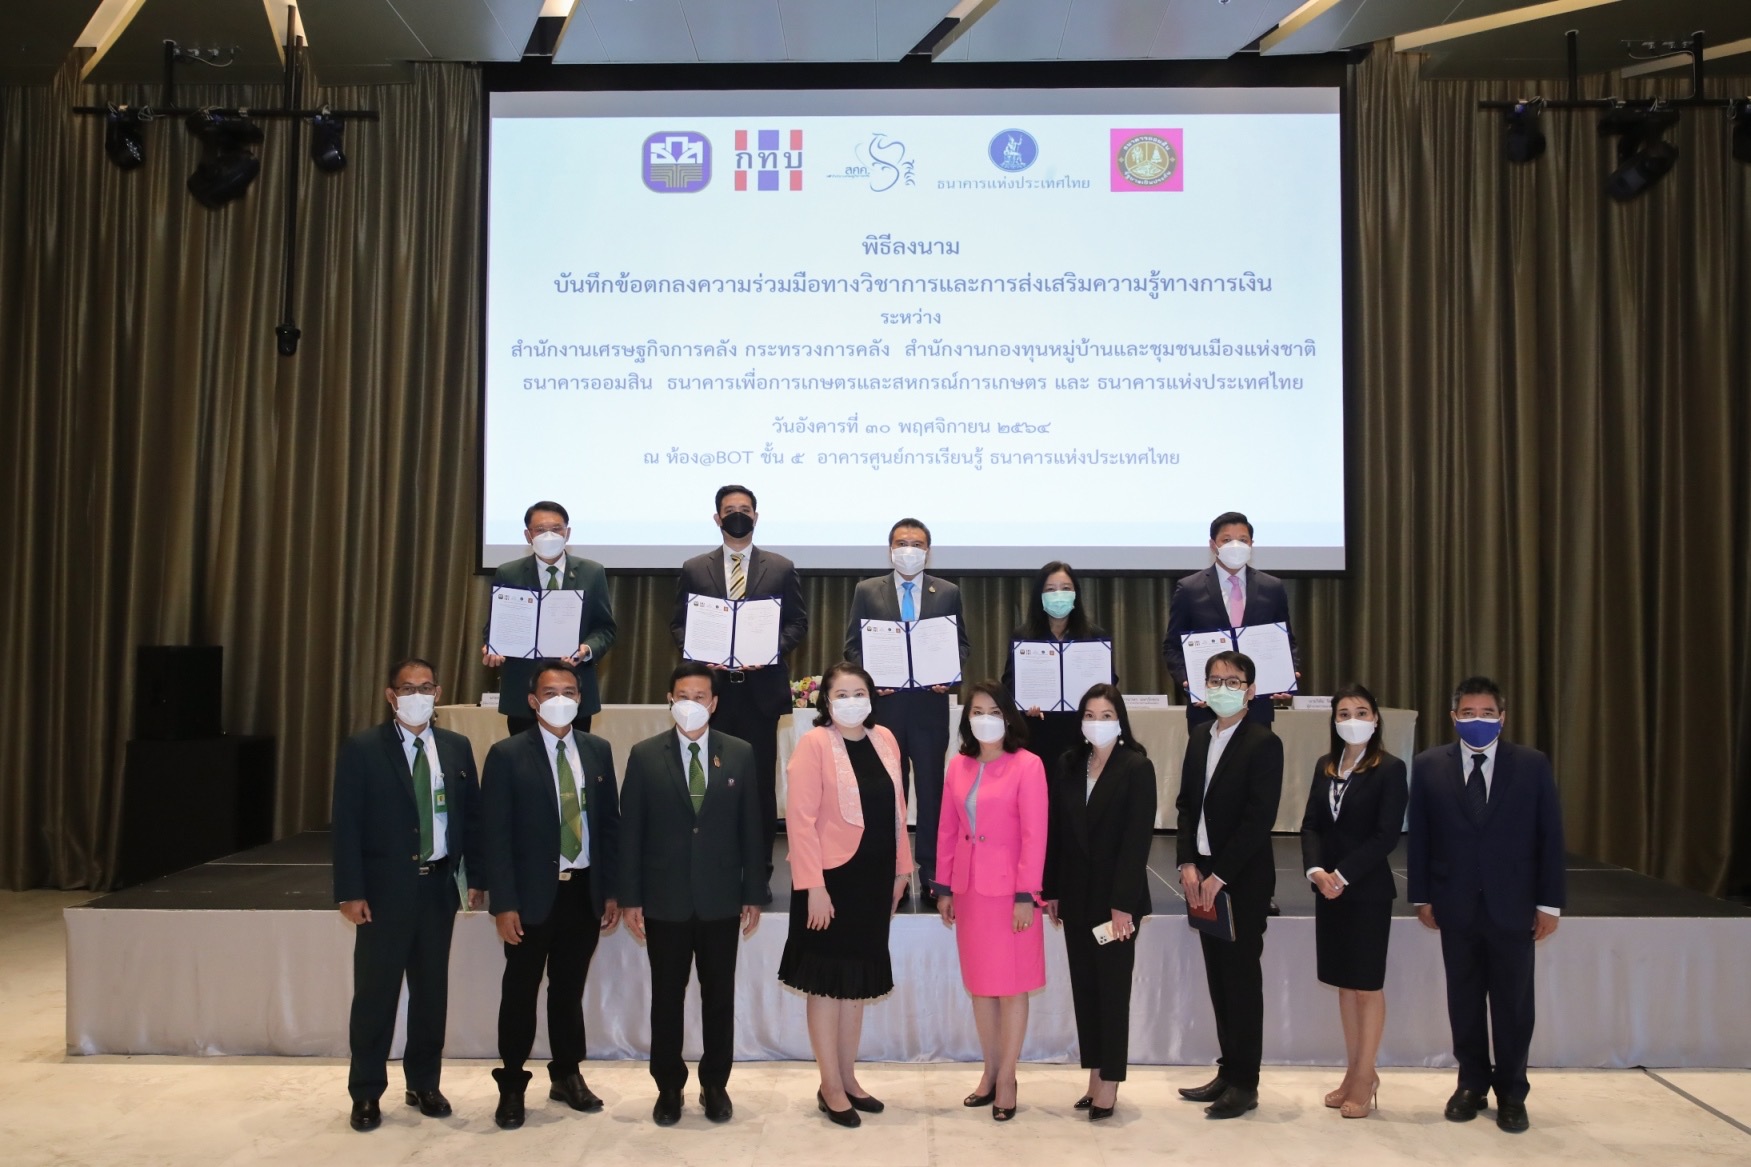 ธ.ก.ส. จับมือ 4 หน่วยงานรัฐ ส่งเสริมความรู้ทางการเงินให้กับคนไทย